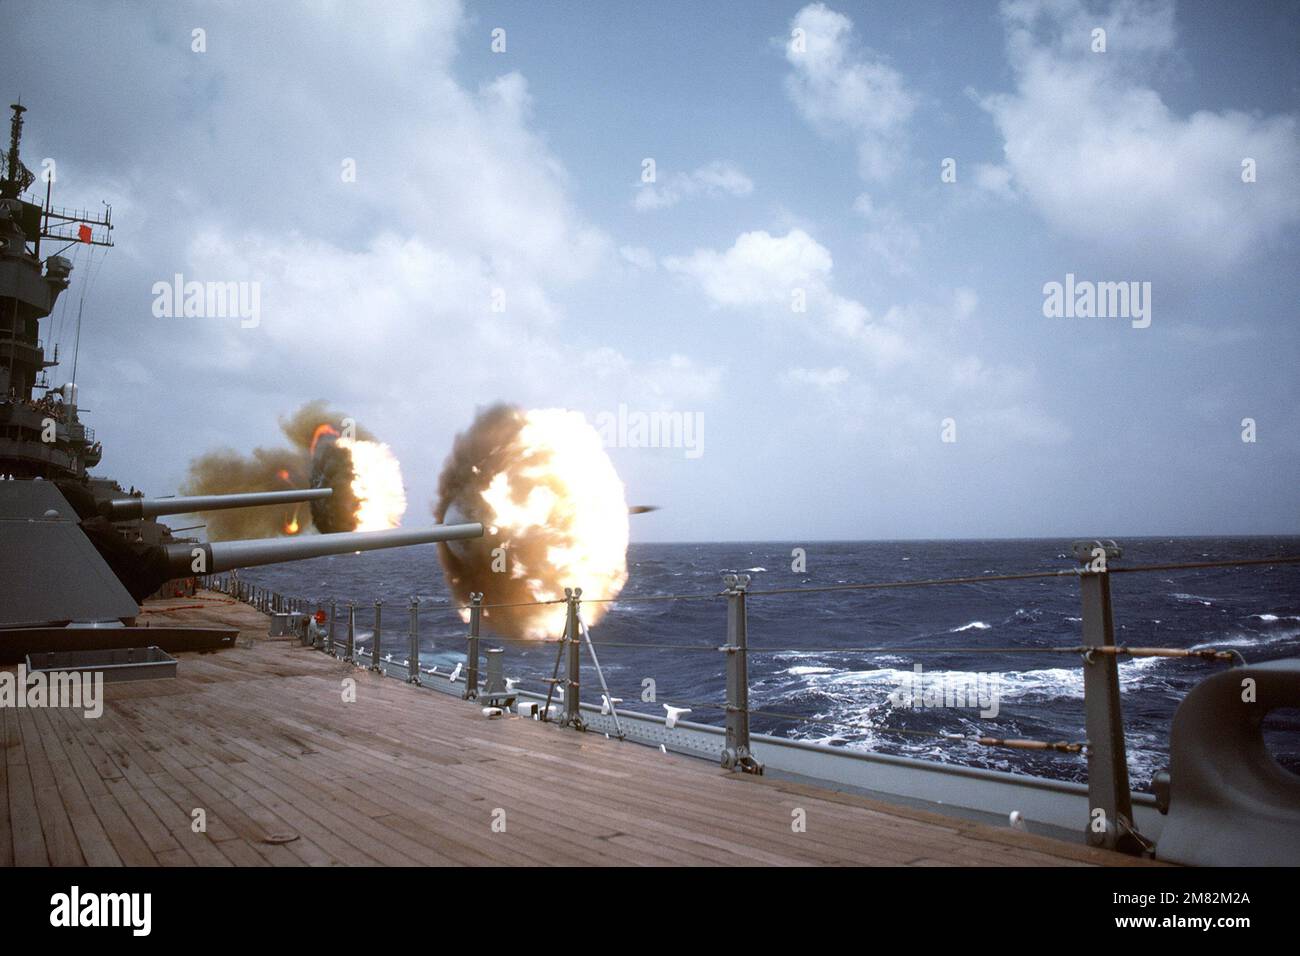 Les canons de calibre 16 pouces/50 à bord du navire de guerre USS IOWA (BB-61) sont tirés au port lors d'une démonstration de puissance de feu. L'IOWA fait partie du Groupe de travail du commandant 28,1.1. Pays: Mer des Caraïbes Banque D'Images